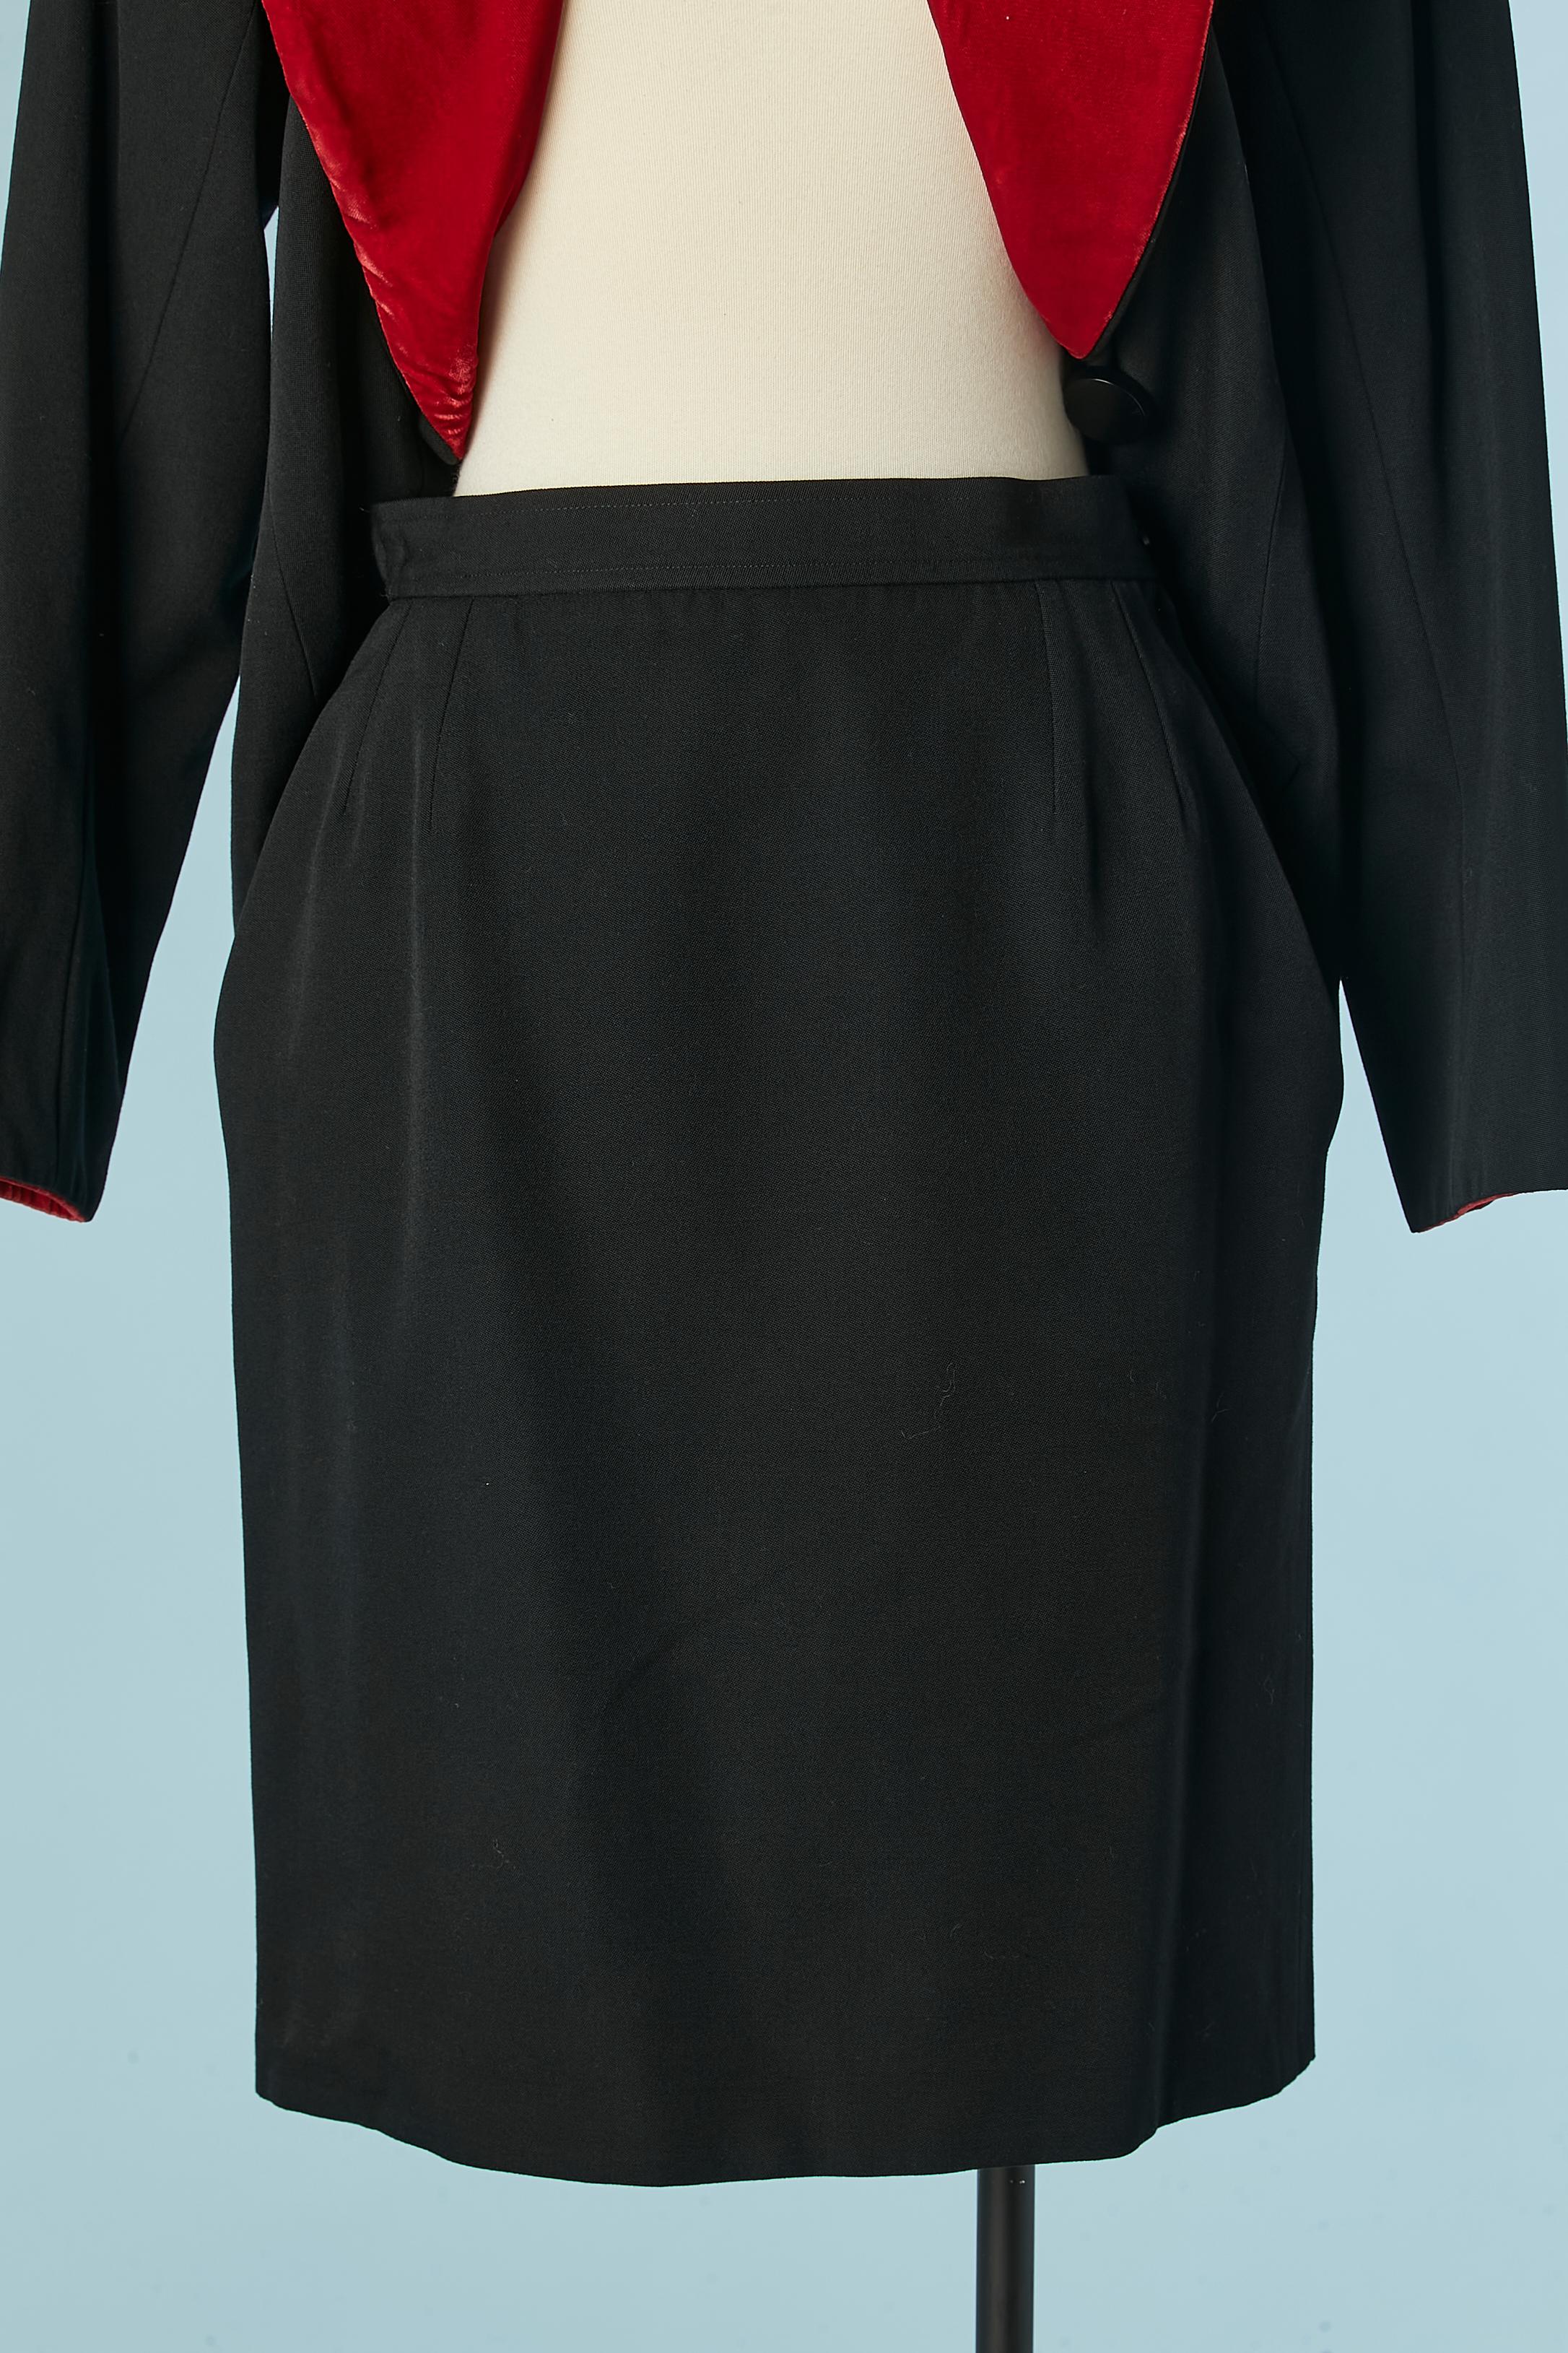 Black skirt-suit with red velvet details Yves Saint Laurent Rive Gauche 1980's  For Sale 4